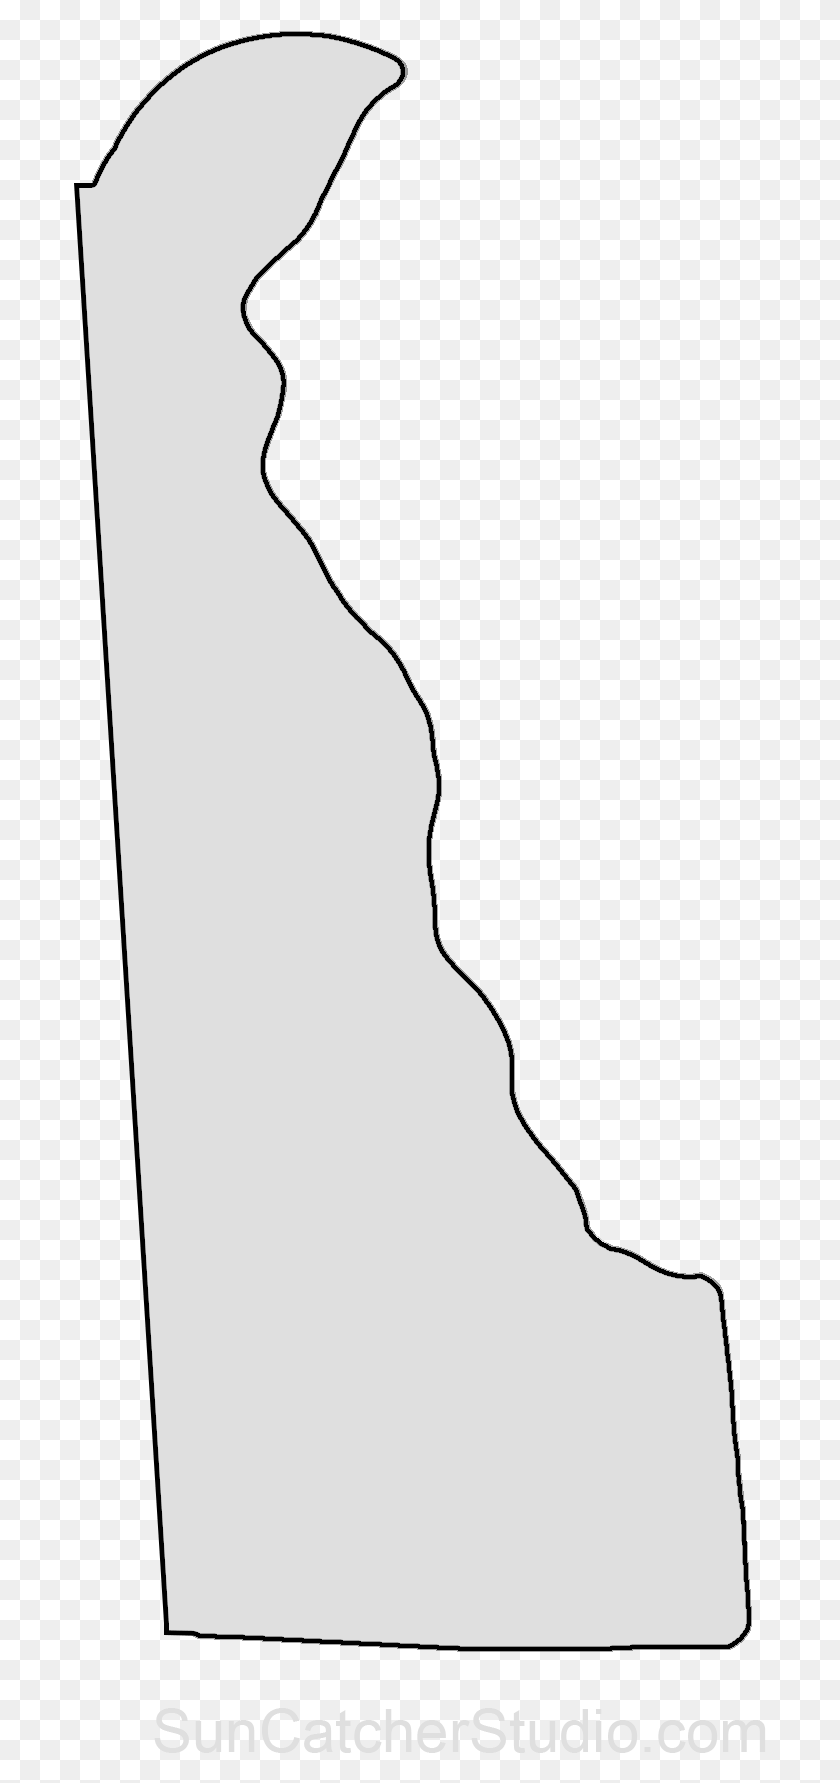 693x1723 Descargar Png Esquema De Mapa De Estado De Delaware Patrón De Estado De Delaware Esquema De Estado De Delaware, Persona, Humano Hd Png